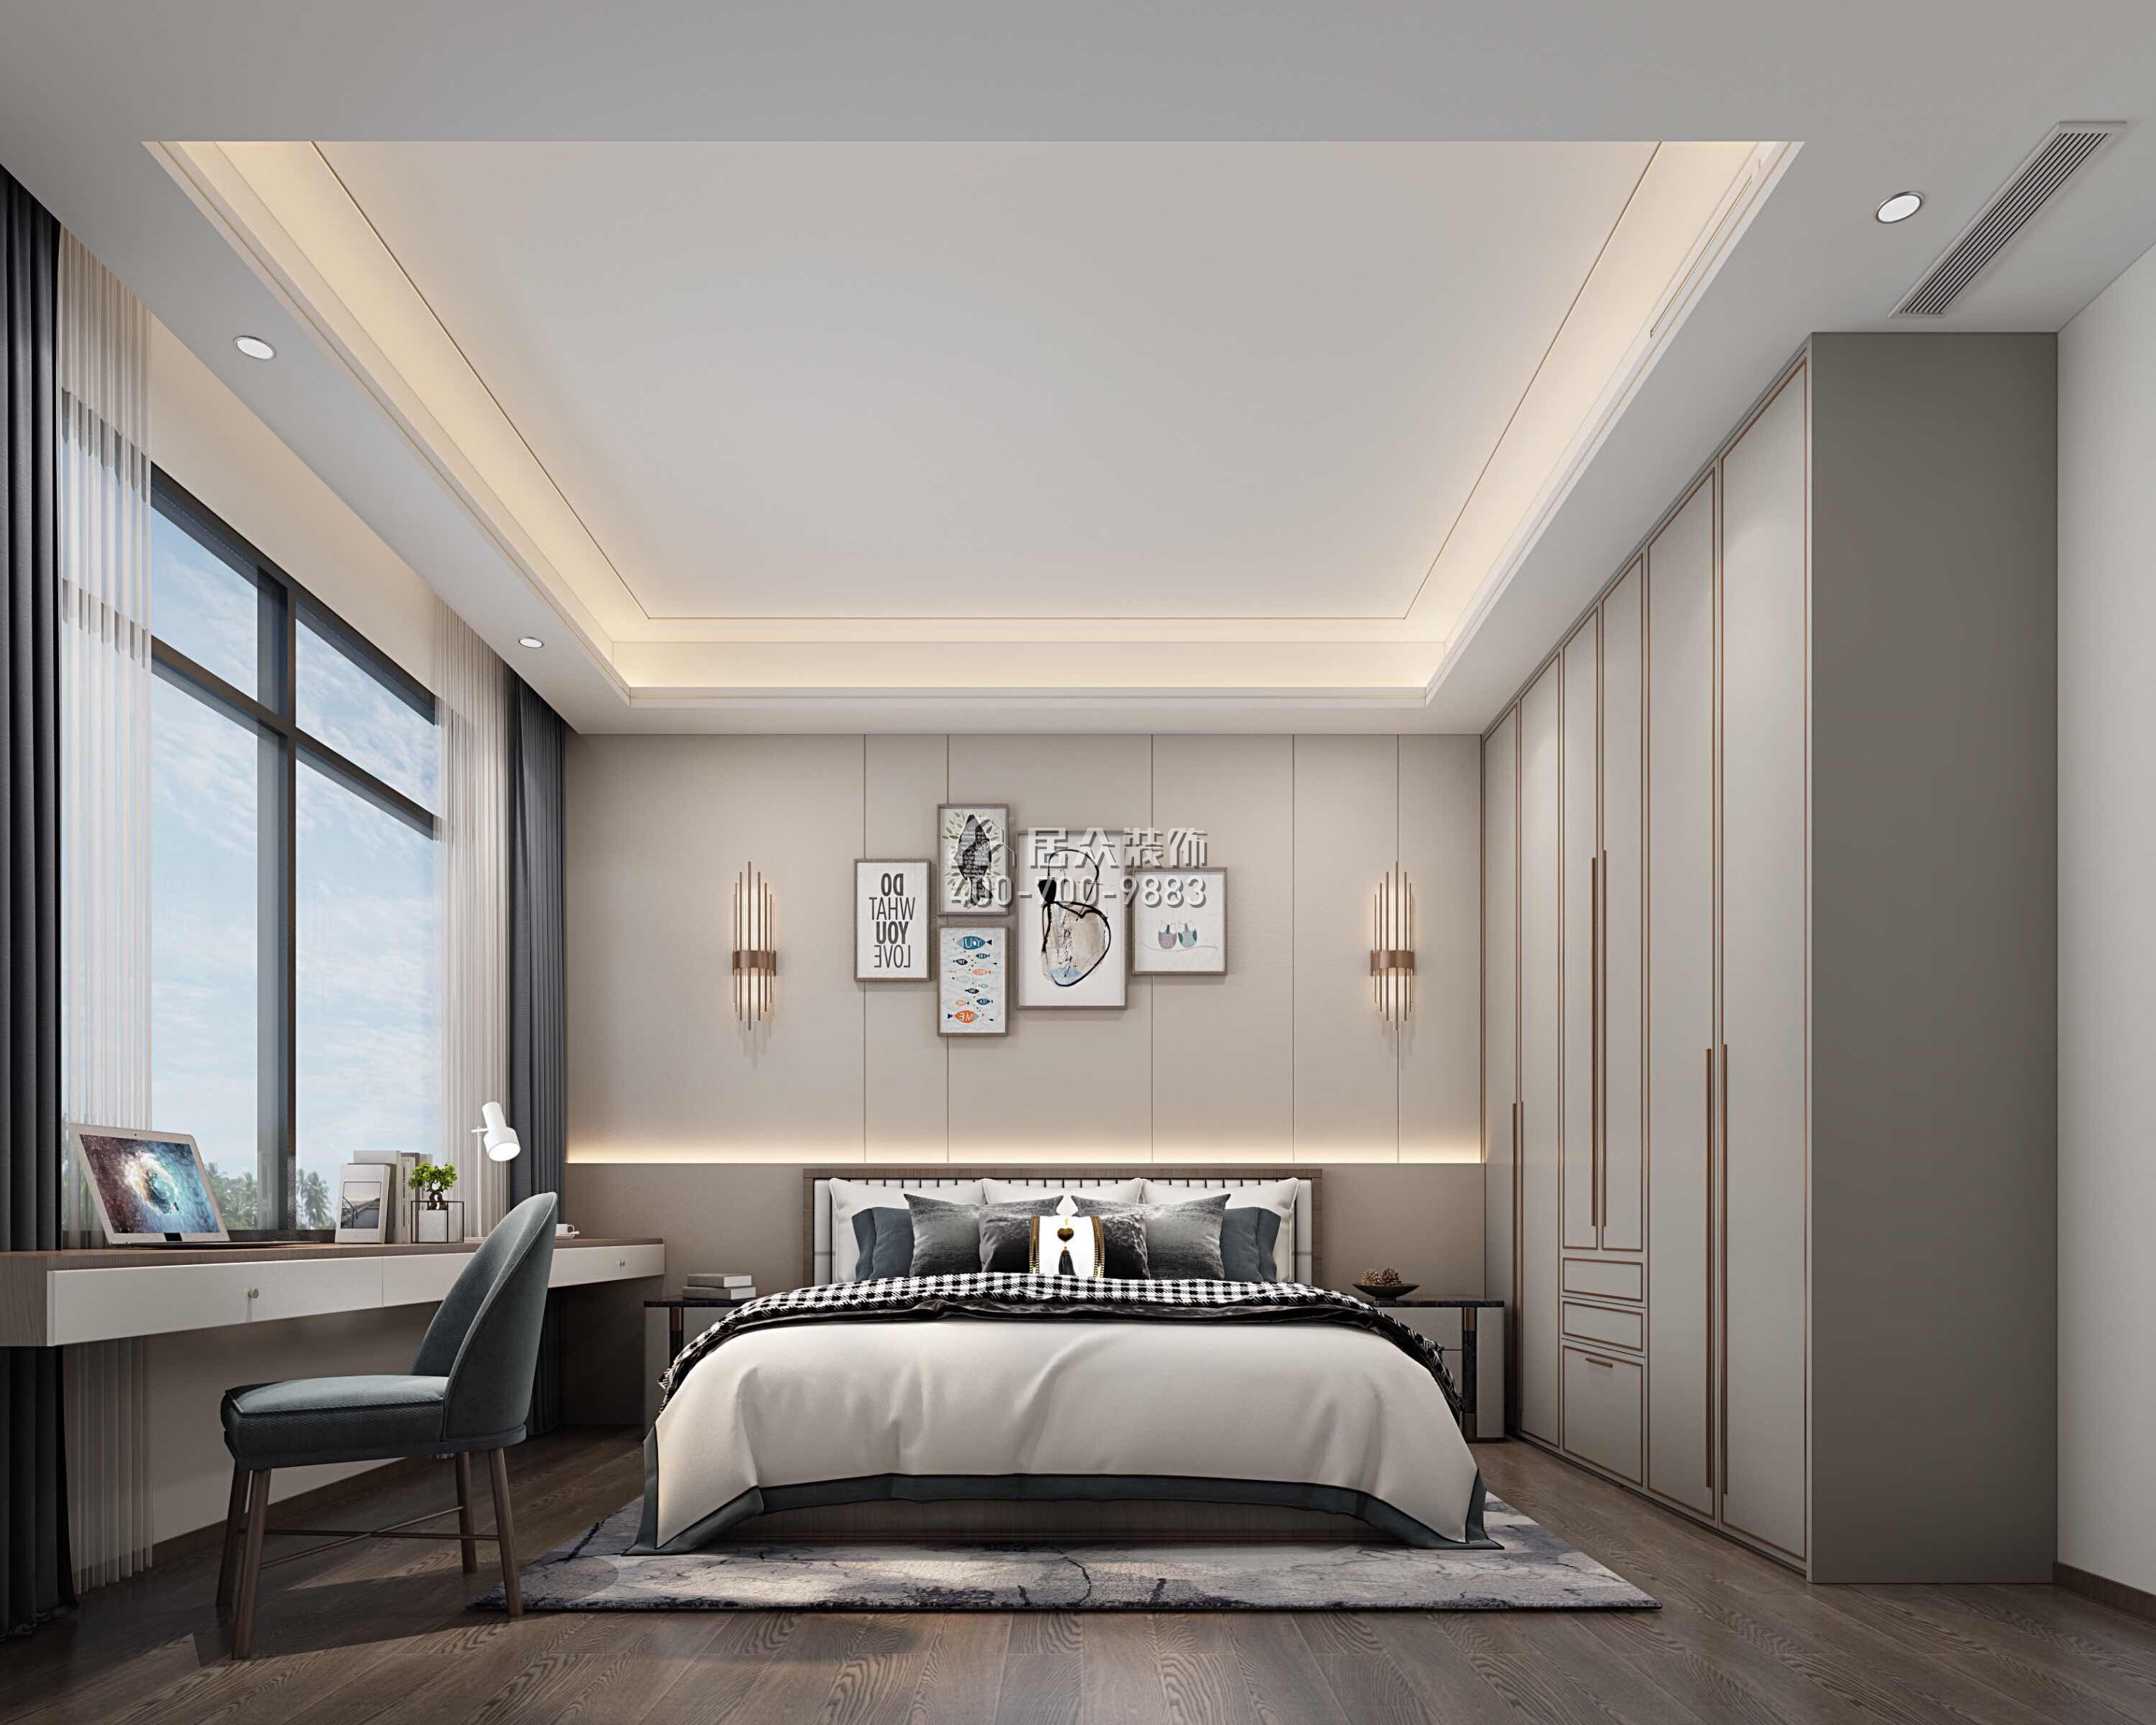 万科皇马郦宫241平方米现代简约风格平层户型卧室装修效果图